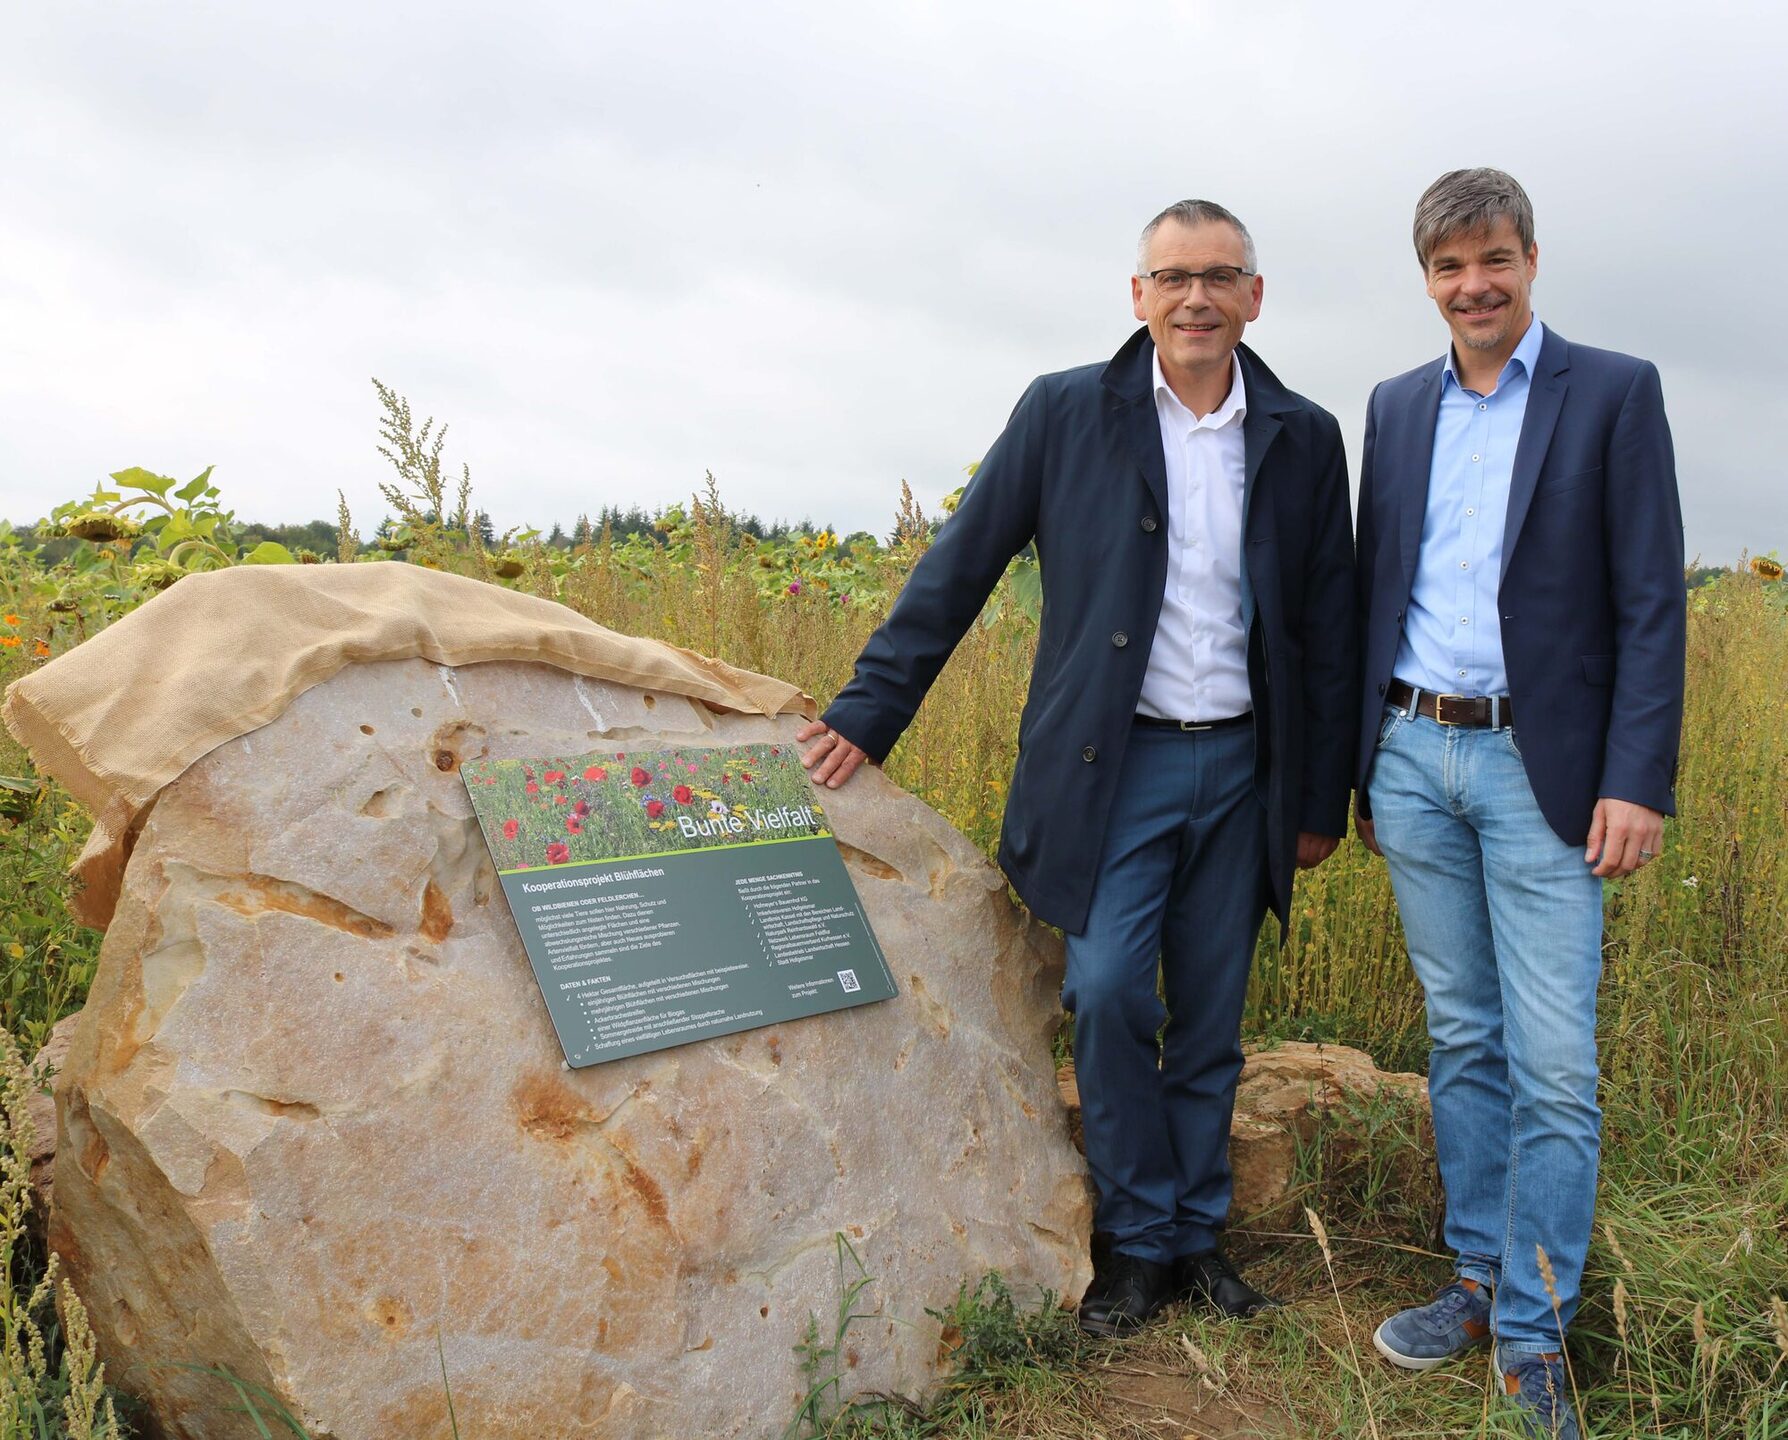 Vizelandrat Andreas Siebert und Bürgermeister Markus Mannsbarth bei der Besichtigung des Pilotprojektes im Herbst 2019.